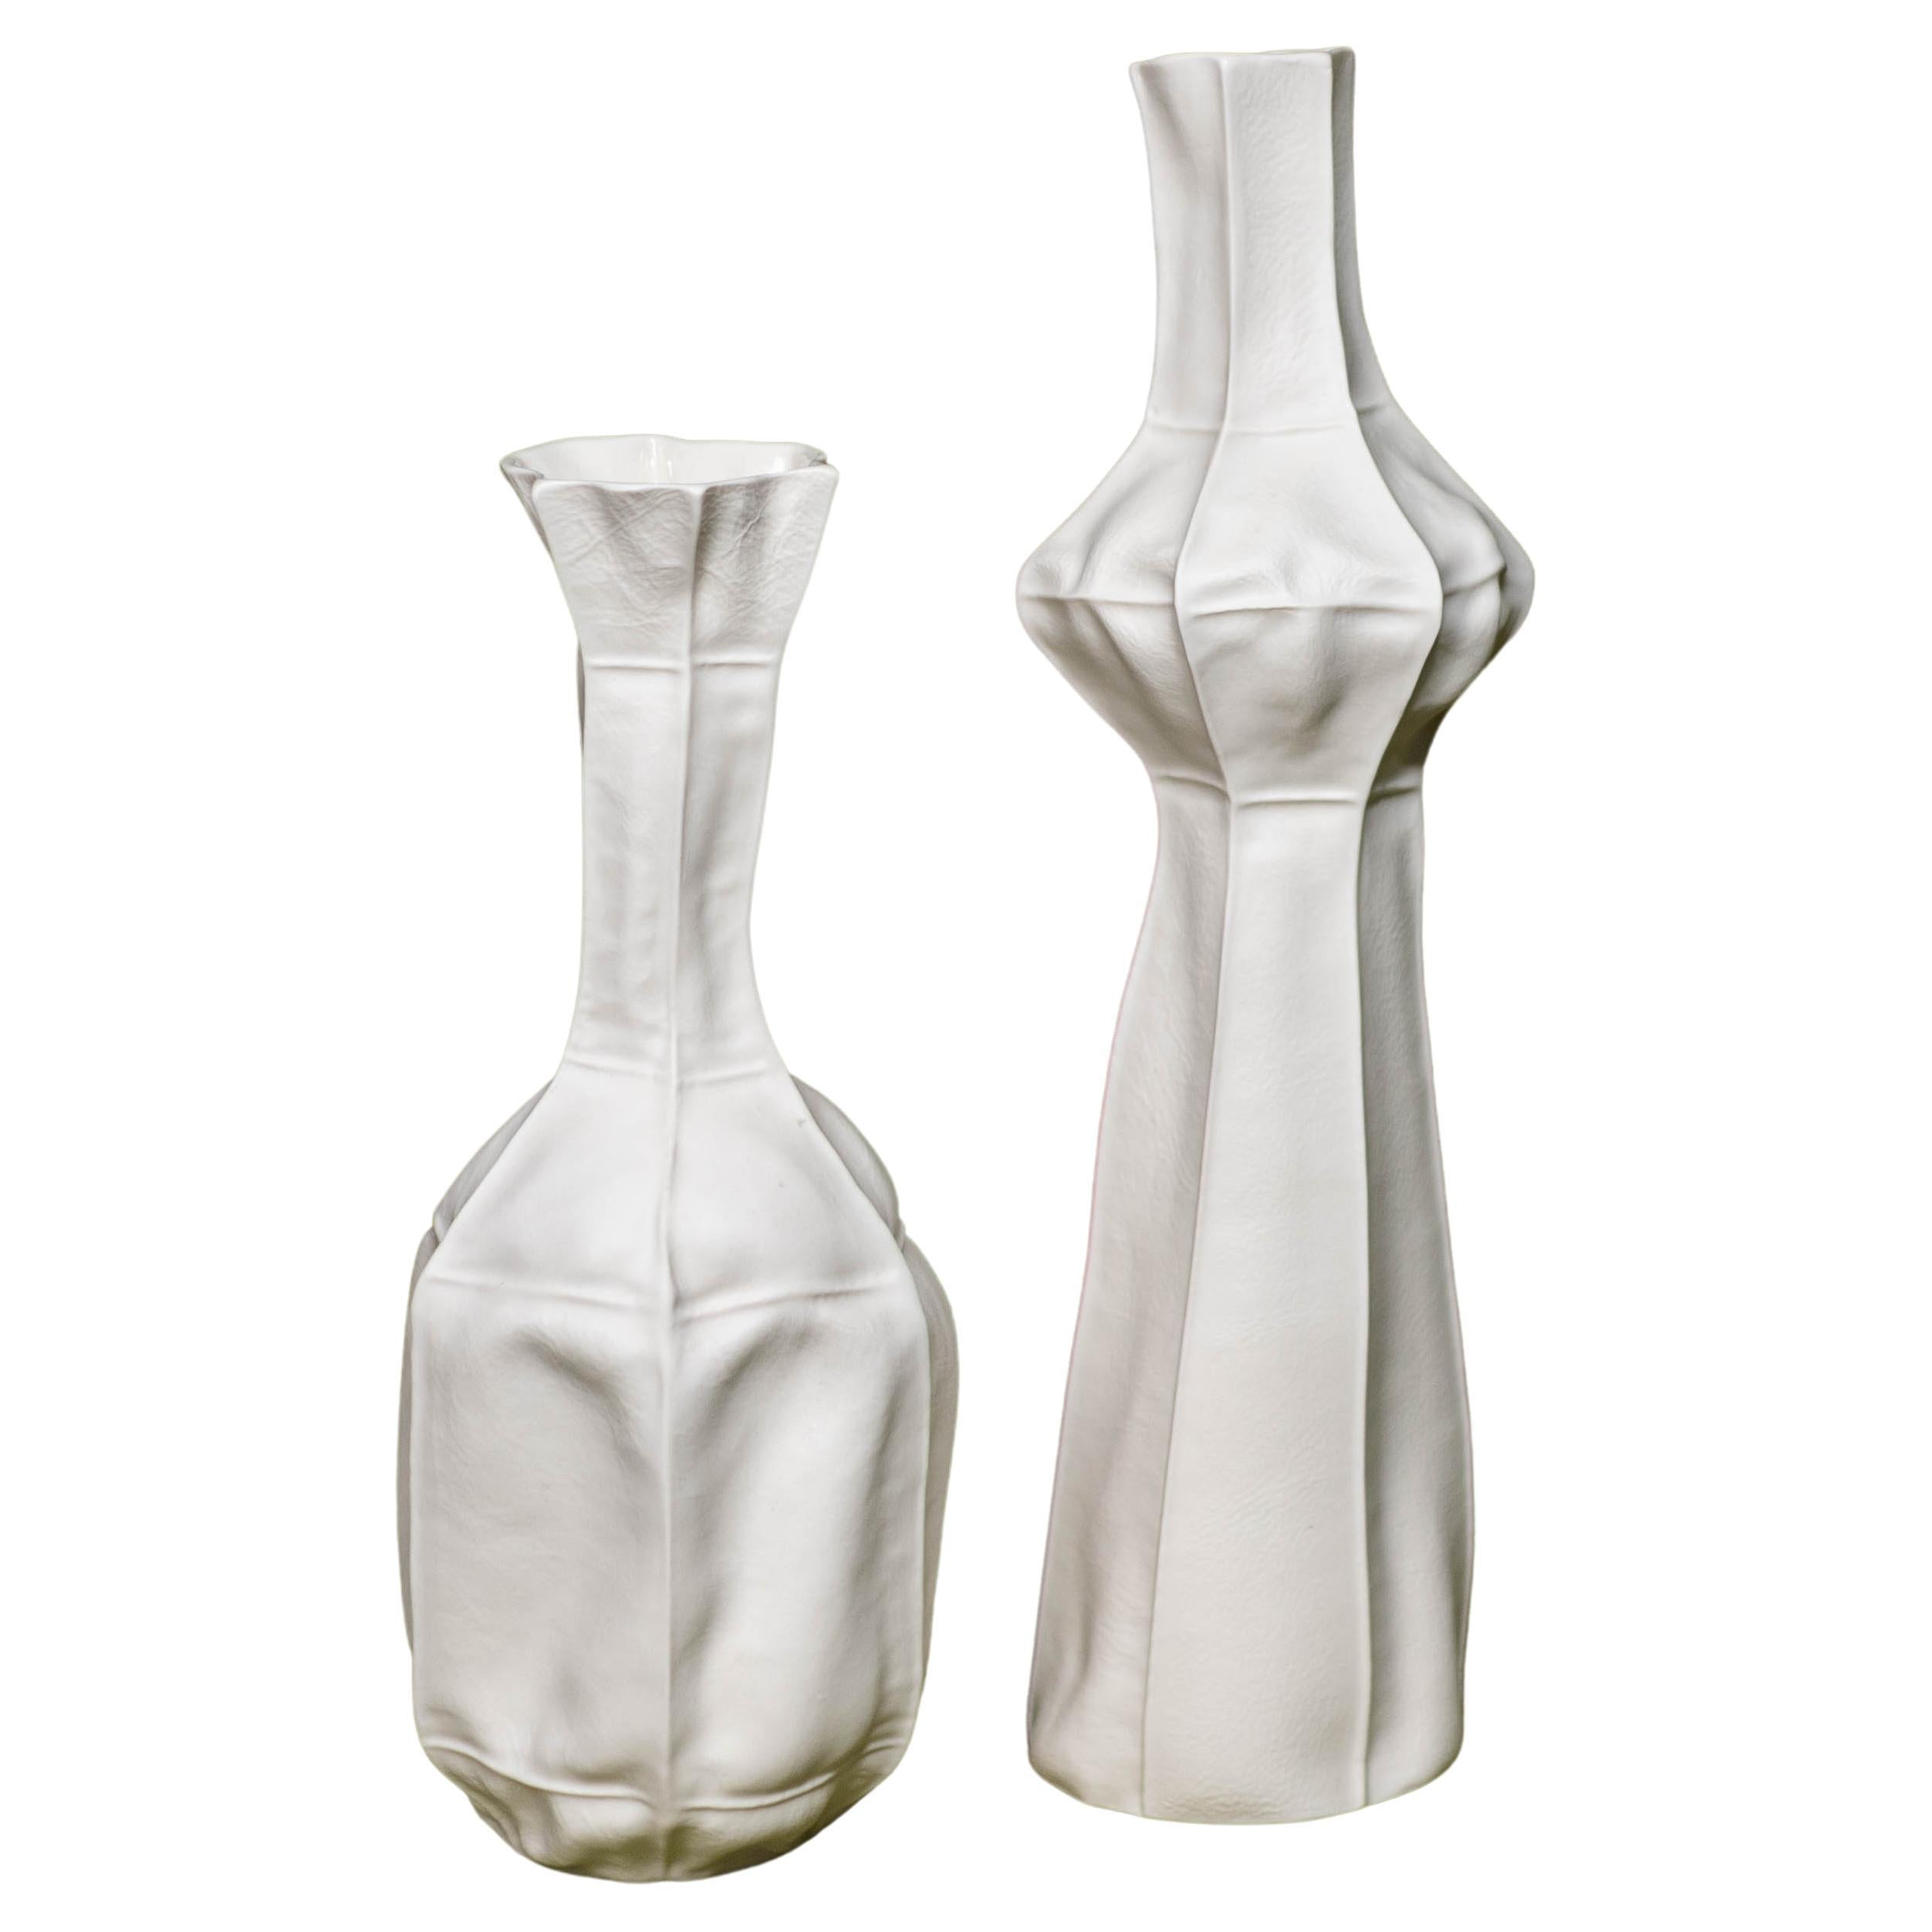 Paire de vases sculpturaux Kawa en céramique blanche, par Luft Tanaka, organiques, porcelaine